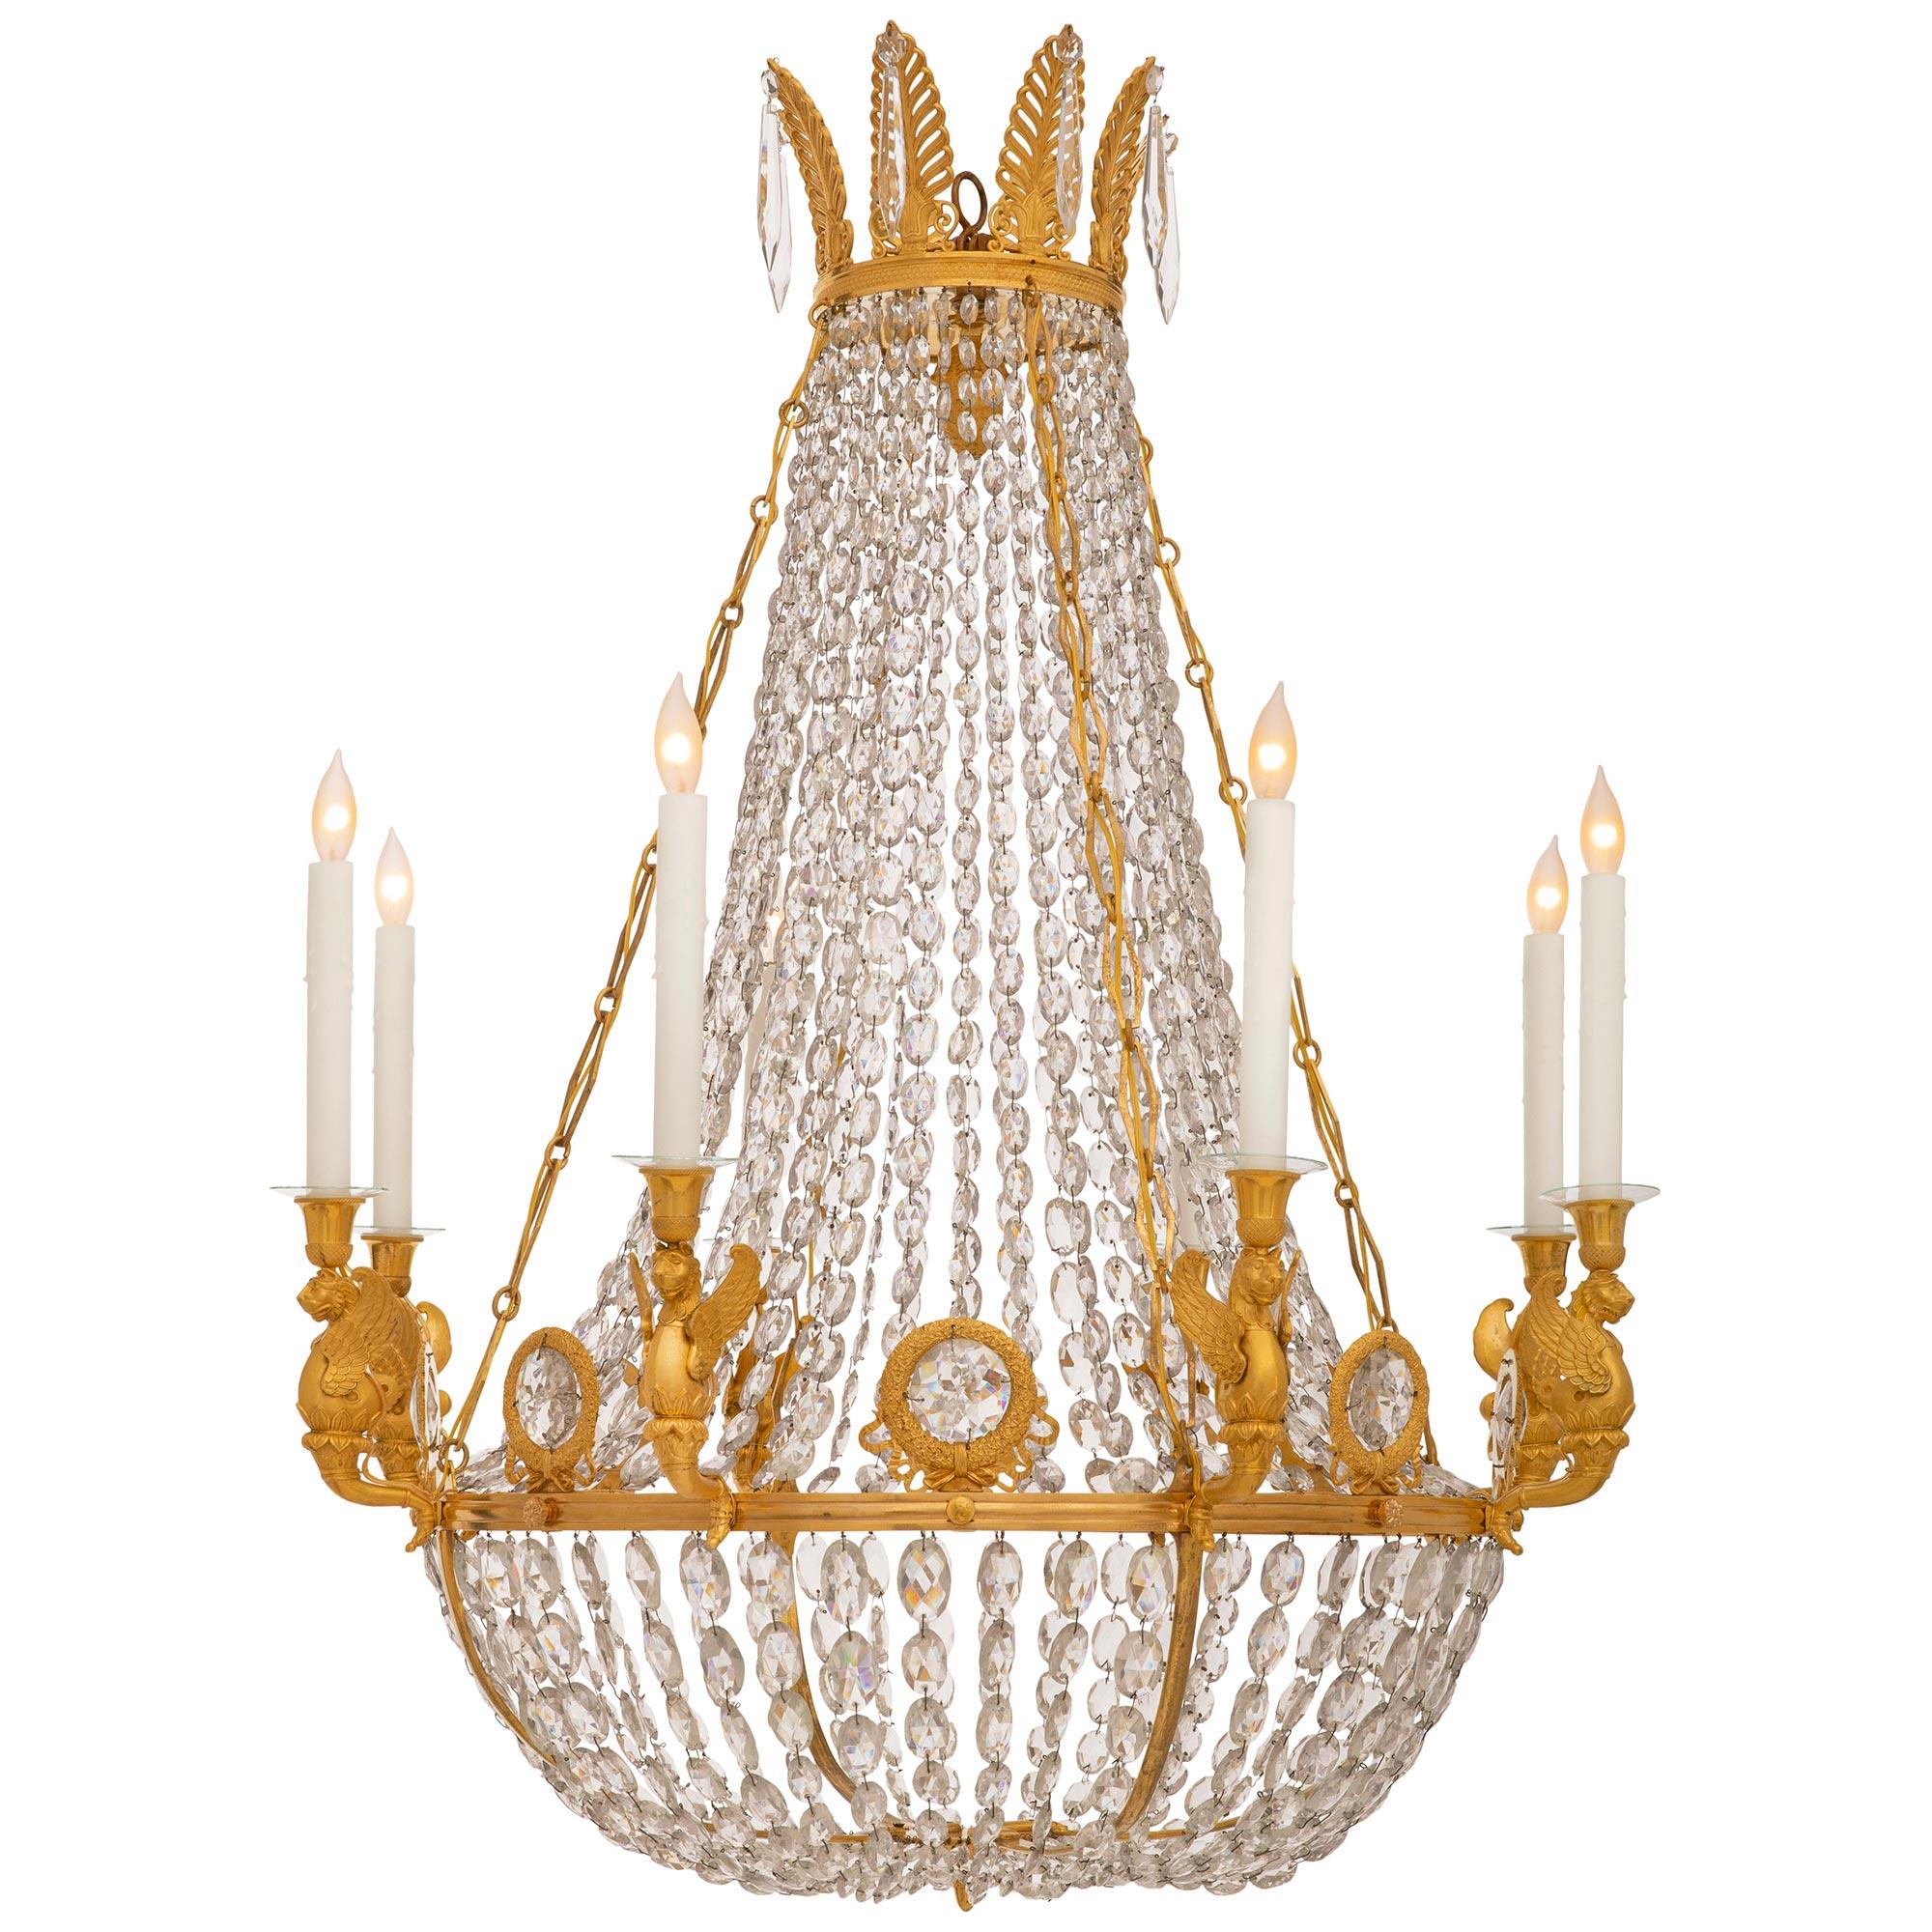 Eine atemberaubende und sehr elegant Französisch 19. Jahrhundert Charles X st. Ormolu und Kristall-Kronleuchter. Dieser beeindruckende achtflammige Kronleuchter wird unten von einer kreisförmigen Ormolu-Reserve zentriert, die mit Akanthusblättern